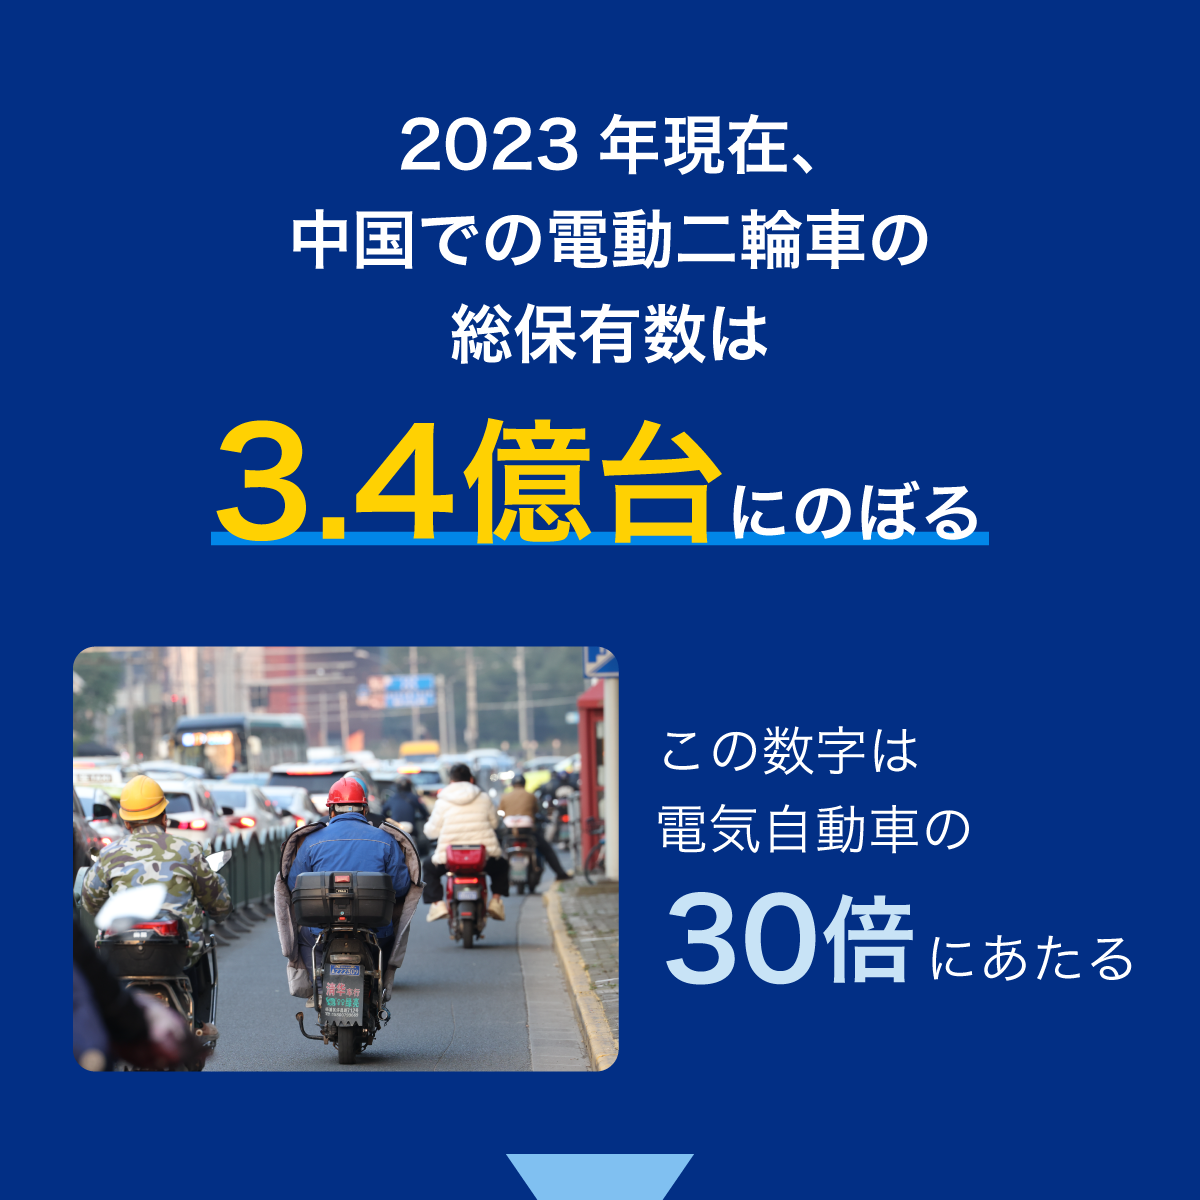 2023年現在、中国での電動二輪車の総保有数は3.4億台にのぼる